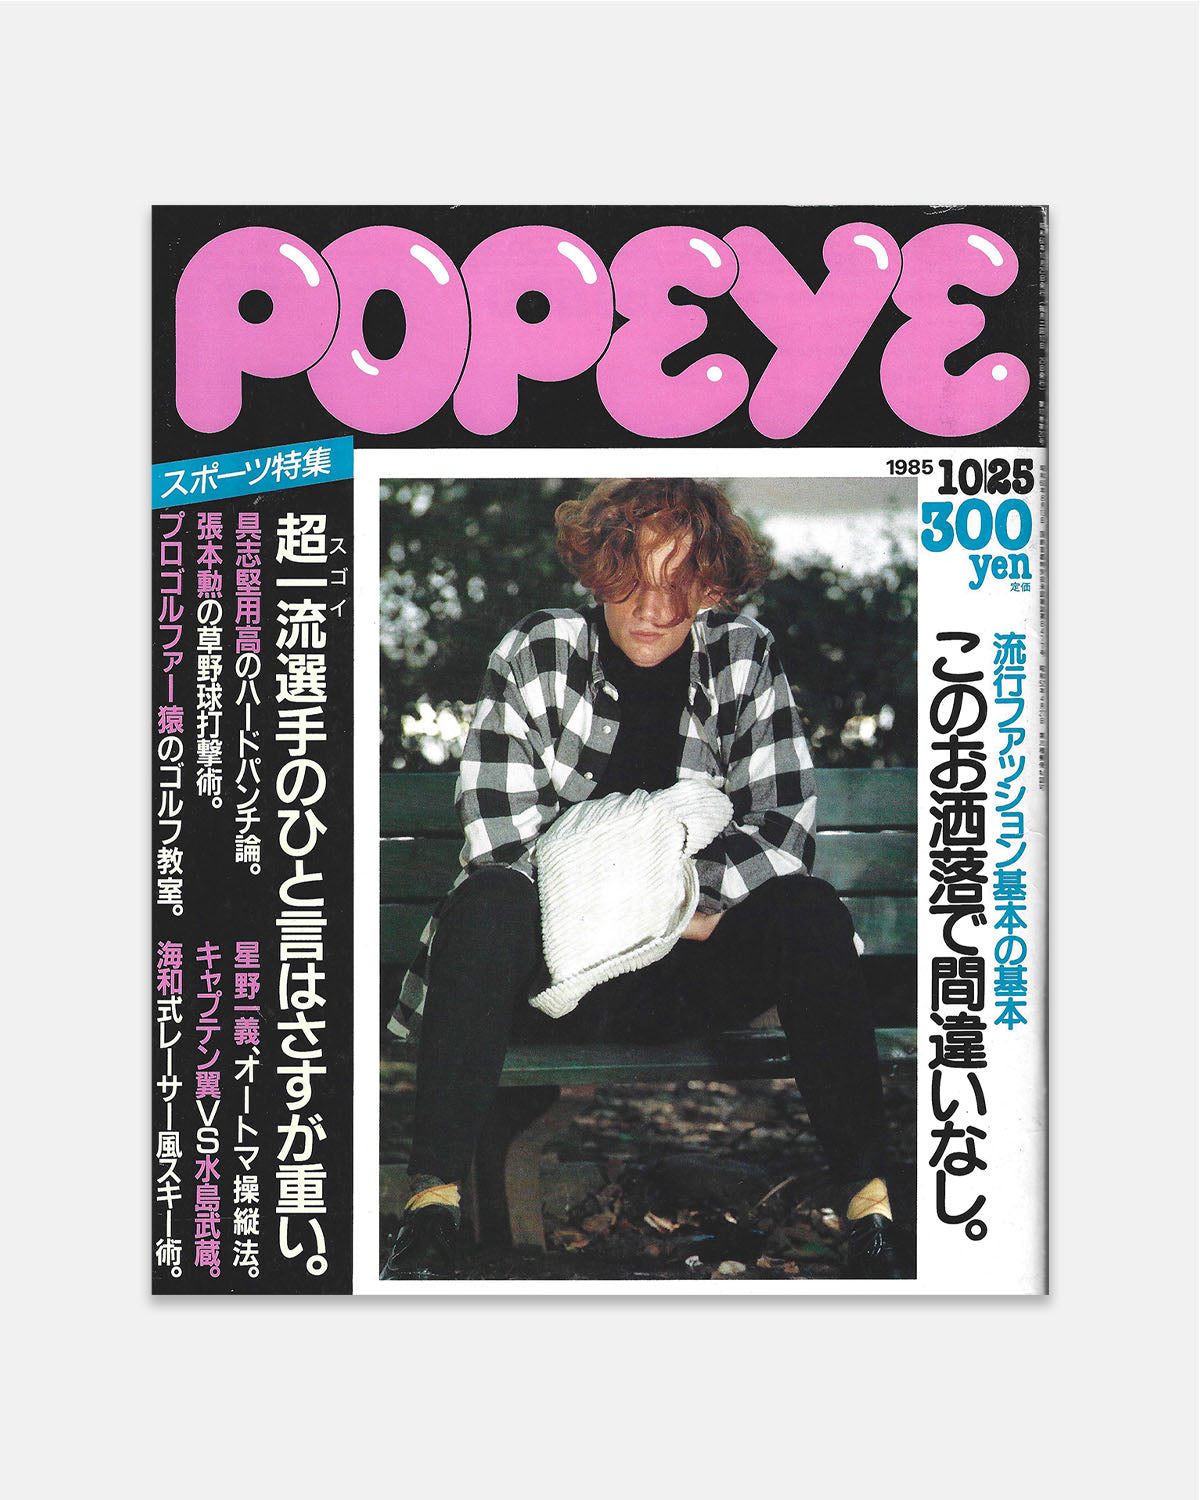 Popeye Magazine October 1985 (#209)